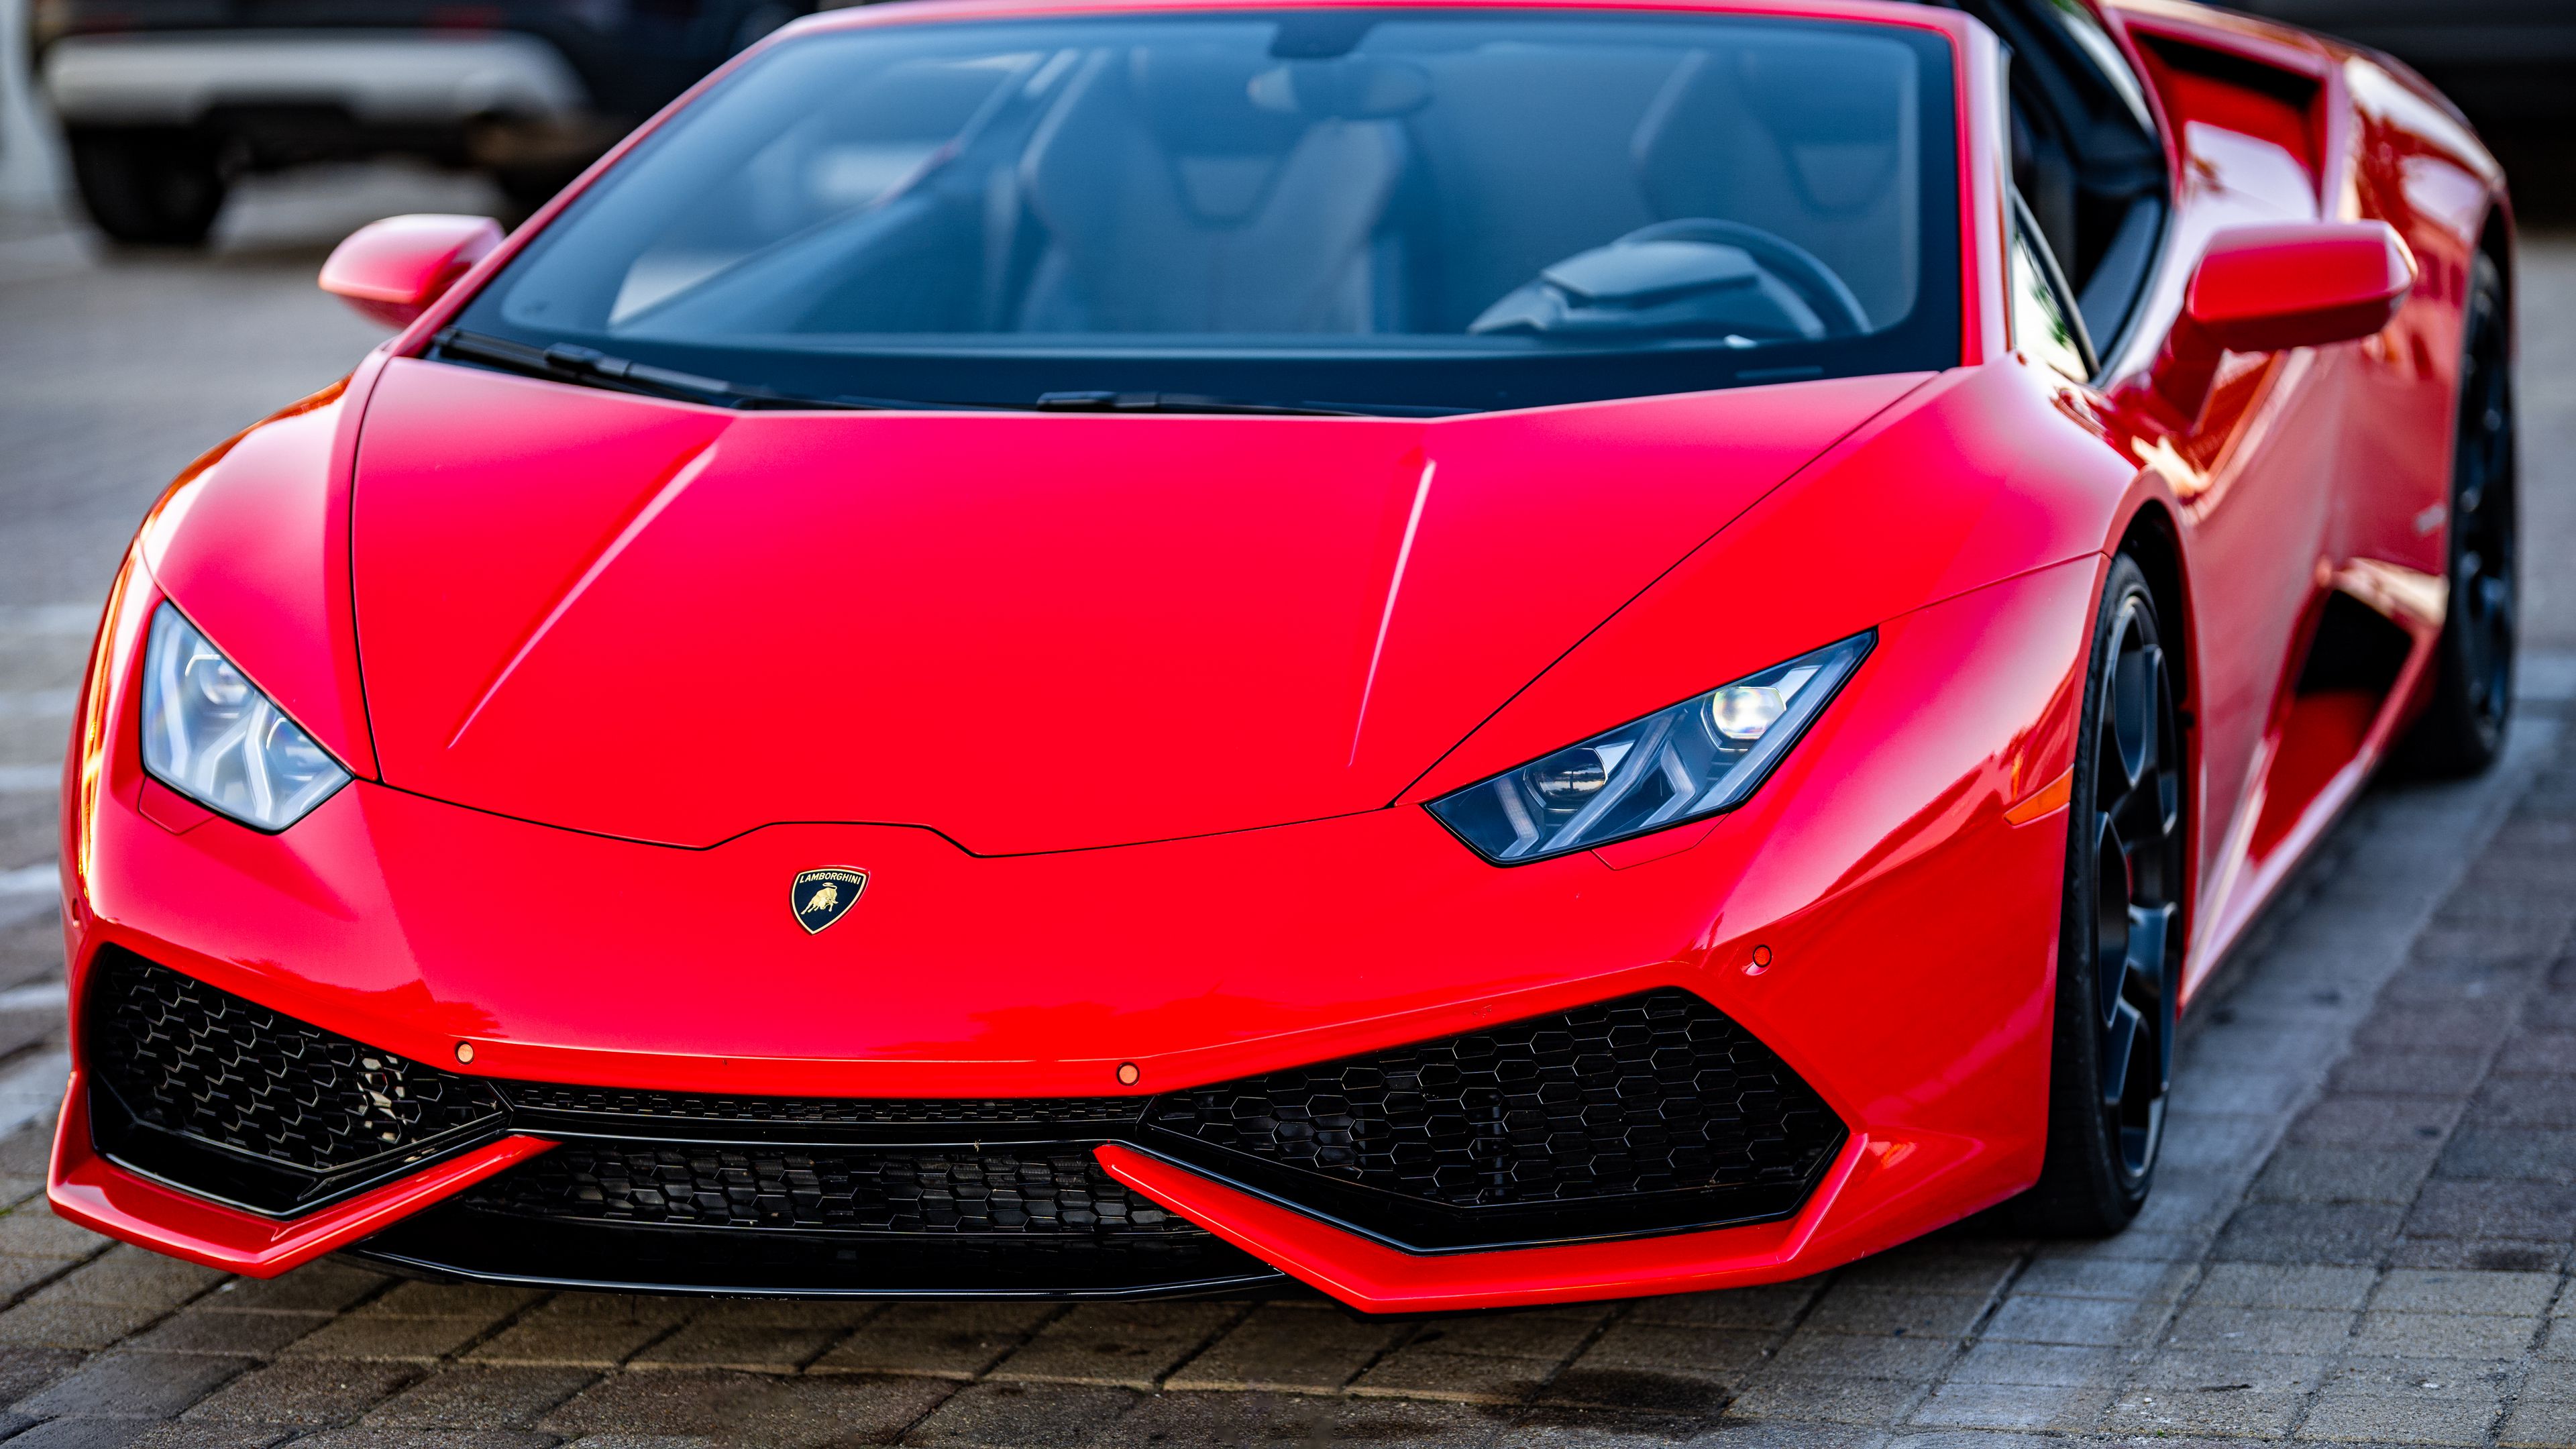 Lamborghini được biết đến là huyền thoại ở thế giới siêu xe. Hãy ngắm nhìn ảnh của những chiếc xe Lamborghini sang trọng và đầy sức mạnh để cảm nhận được sự khác biệt và đẳng cấp của những chiếc siêu xe này.